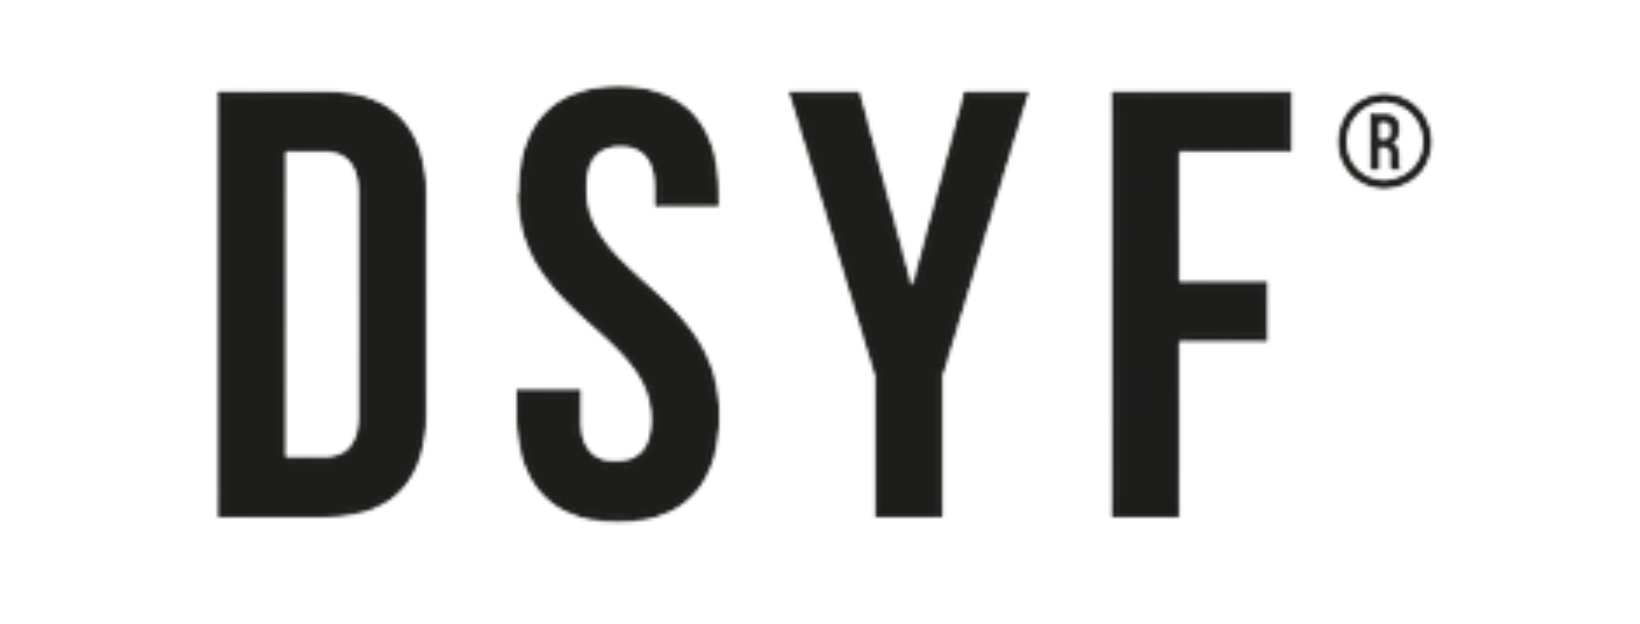 dsyf logo